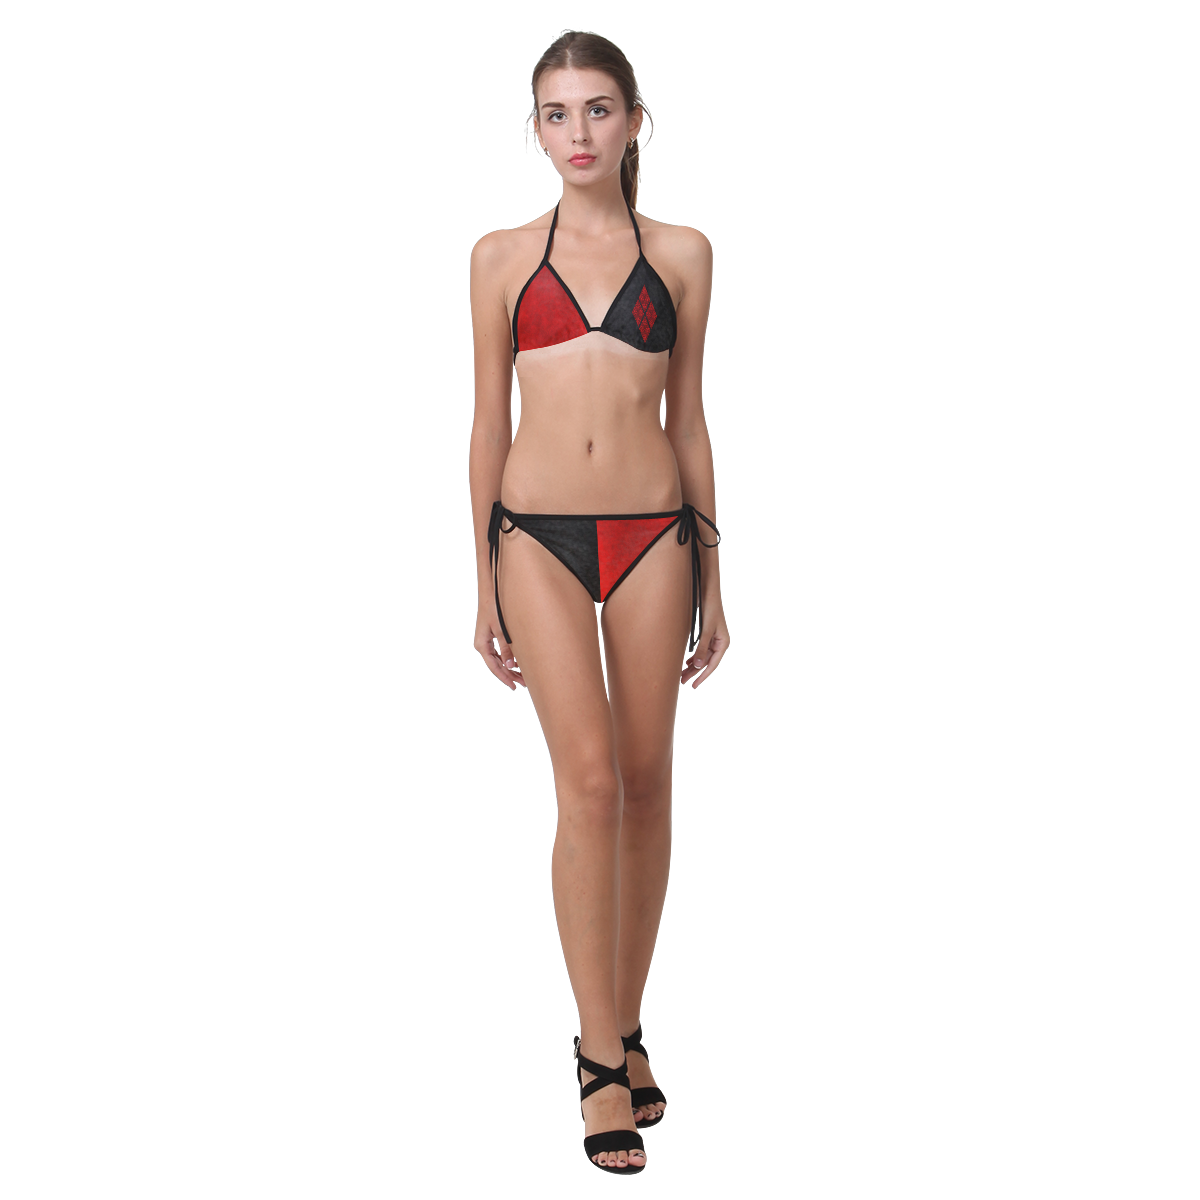 Harleyreddiamond Custom Bikini Swimsuit (Model S01)